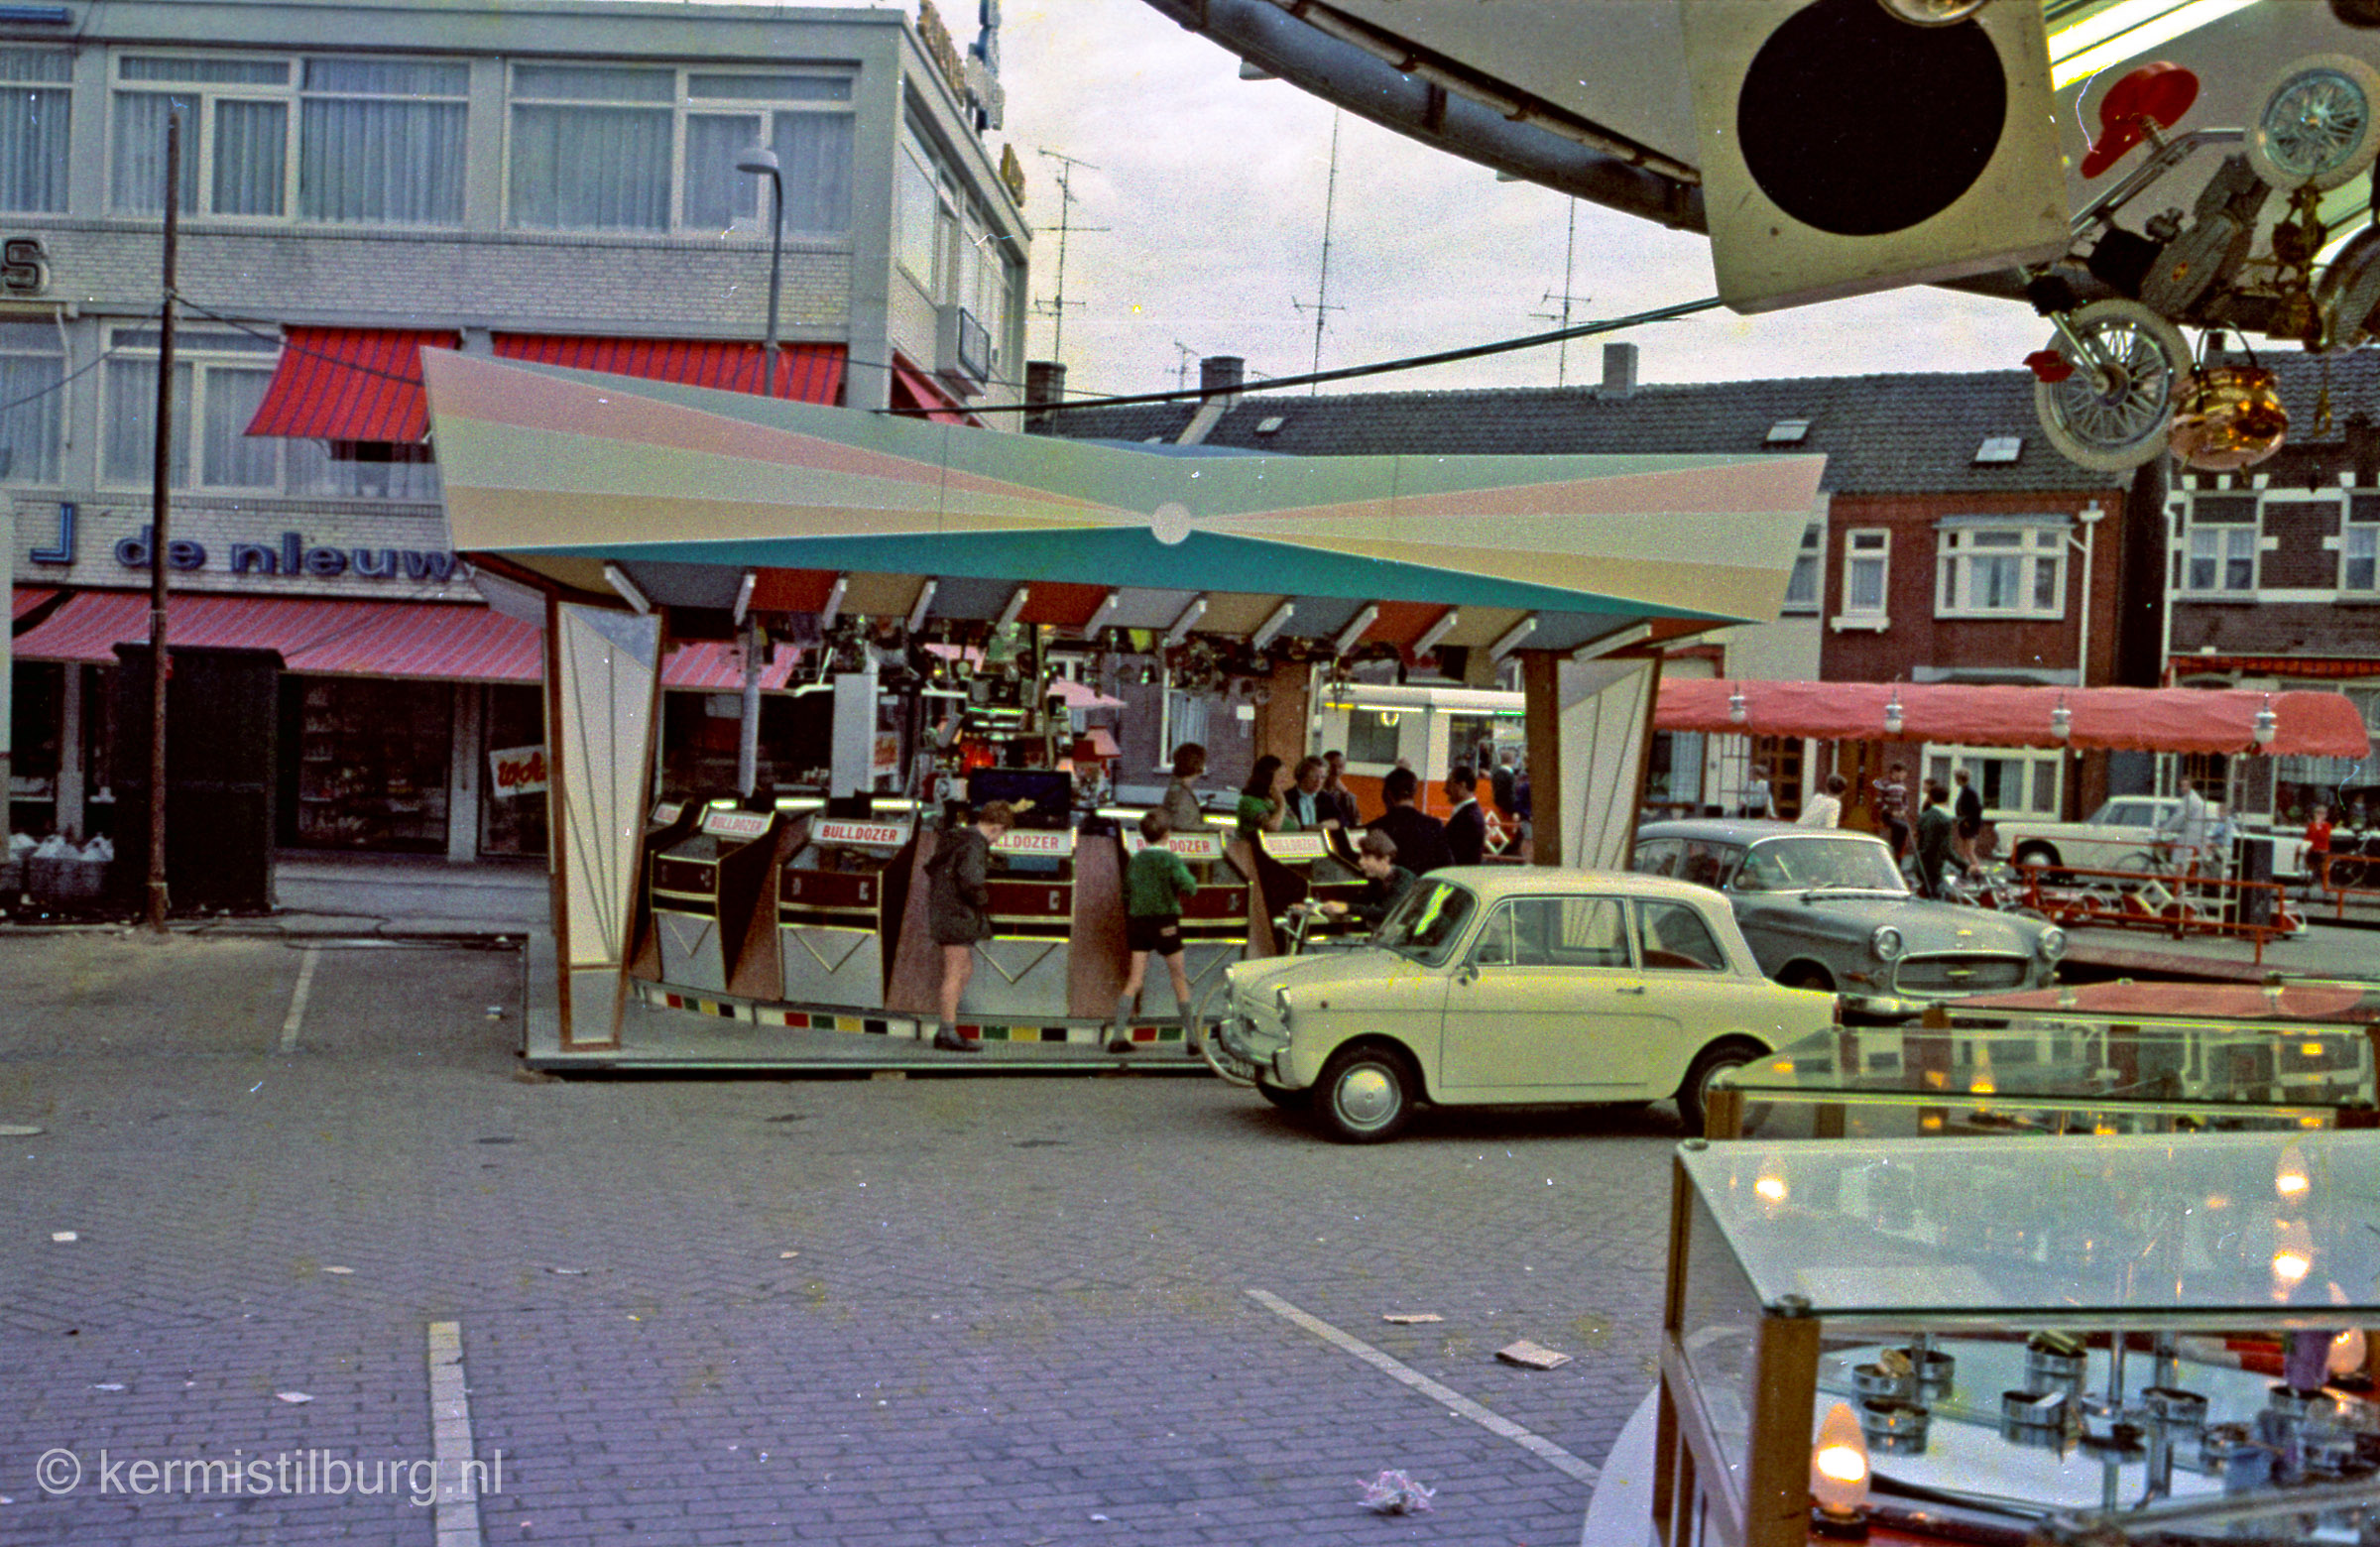 1968, Kermis, Tilburg, Tilburgse kermis, skc